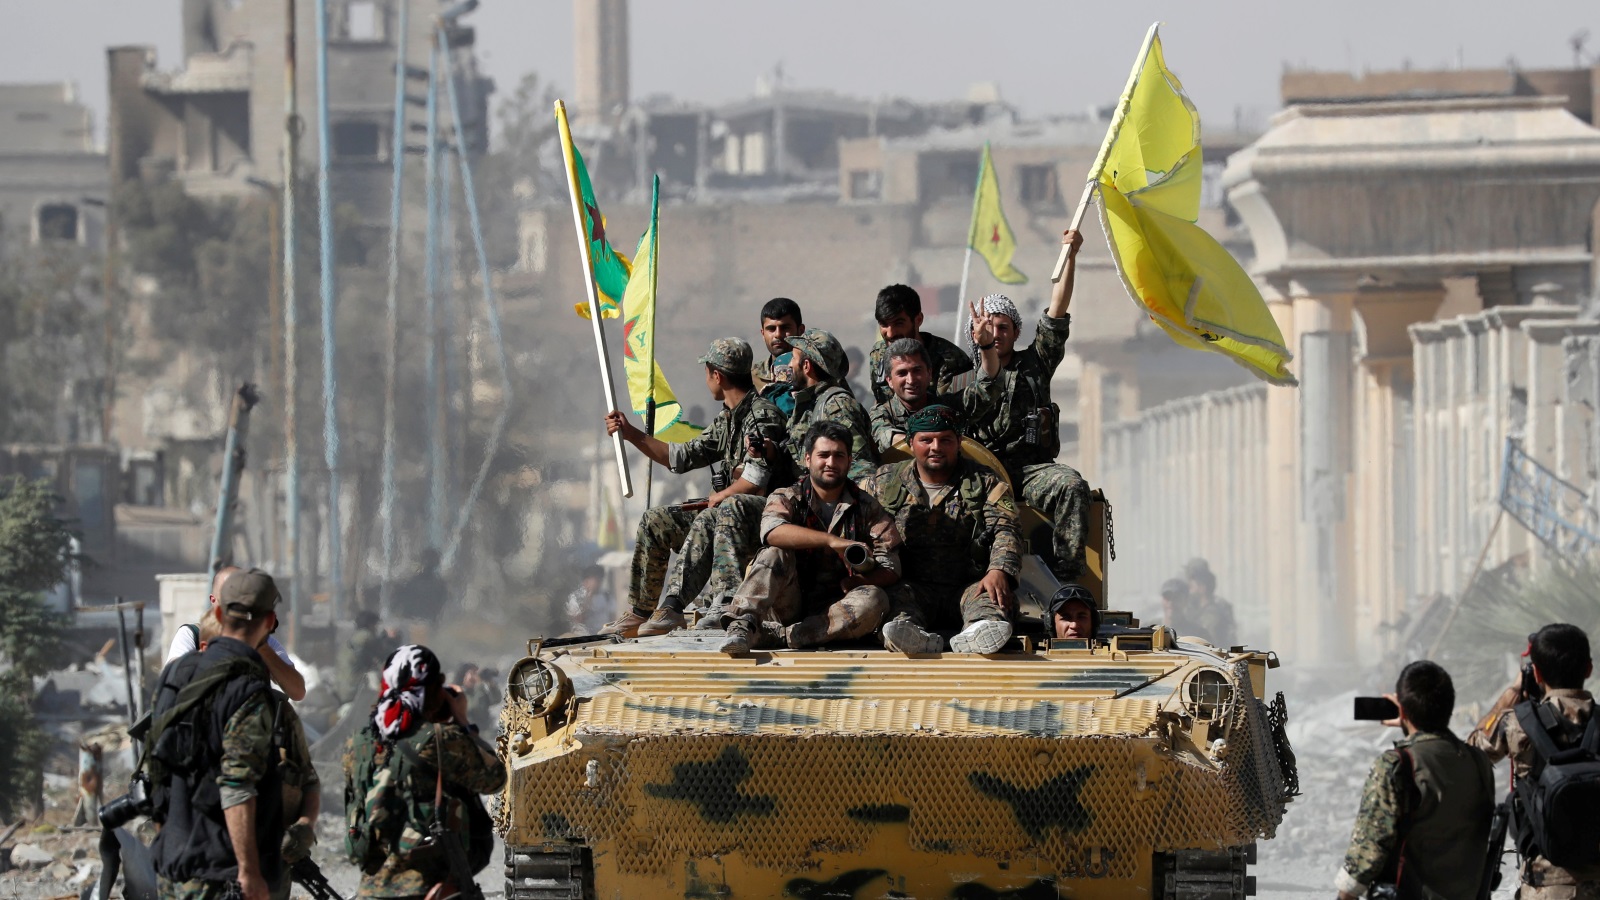 عناصر من قوات سوريا الديمقراطية ذات الأغلبية الكردية تحتفل بالسيطرة على مدينة الرقة في سوريا (رويترز)